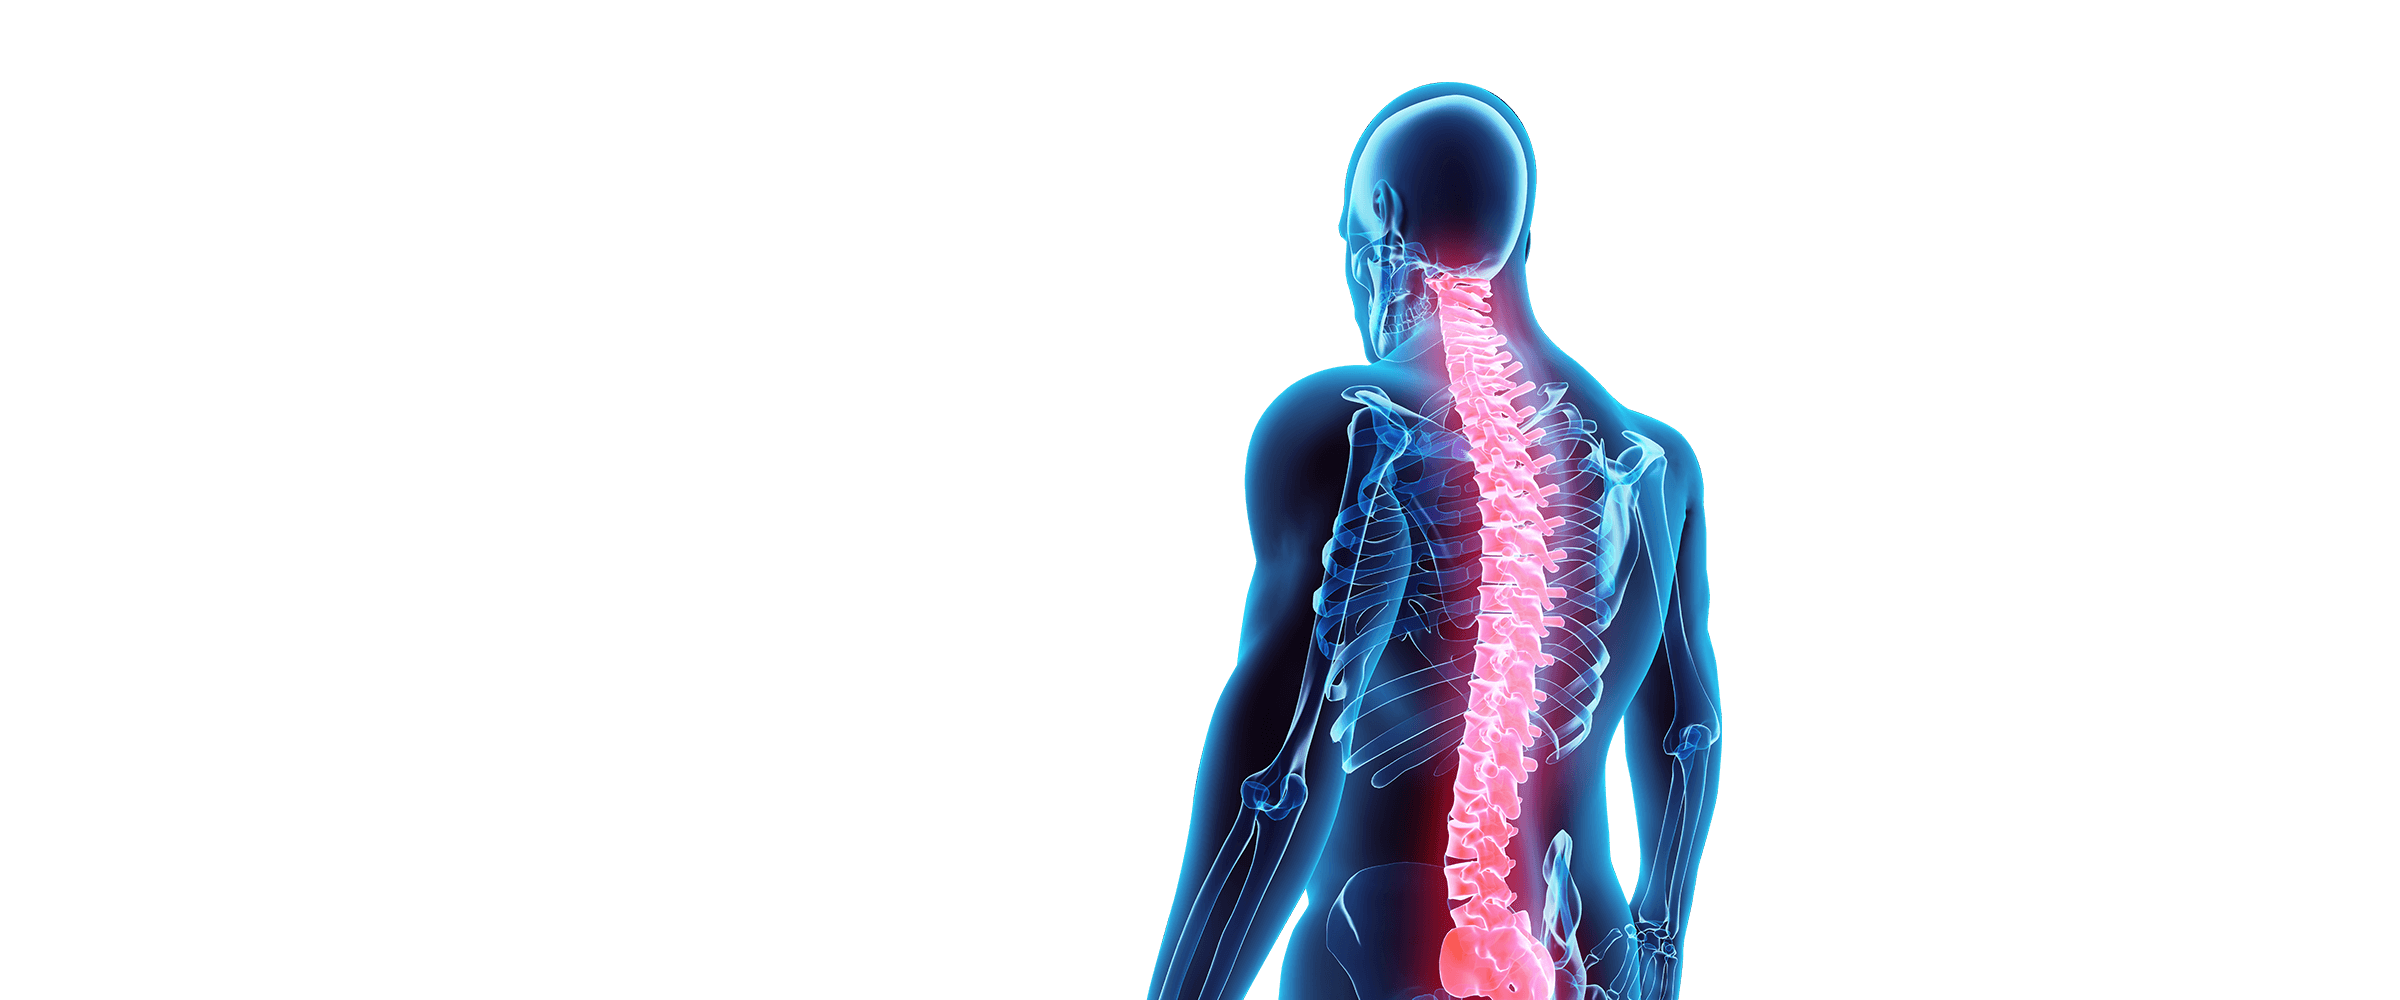 3D Spine Image